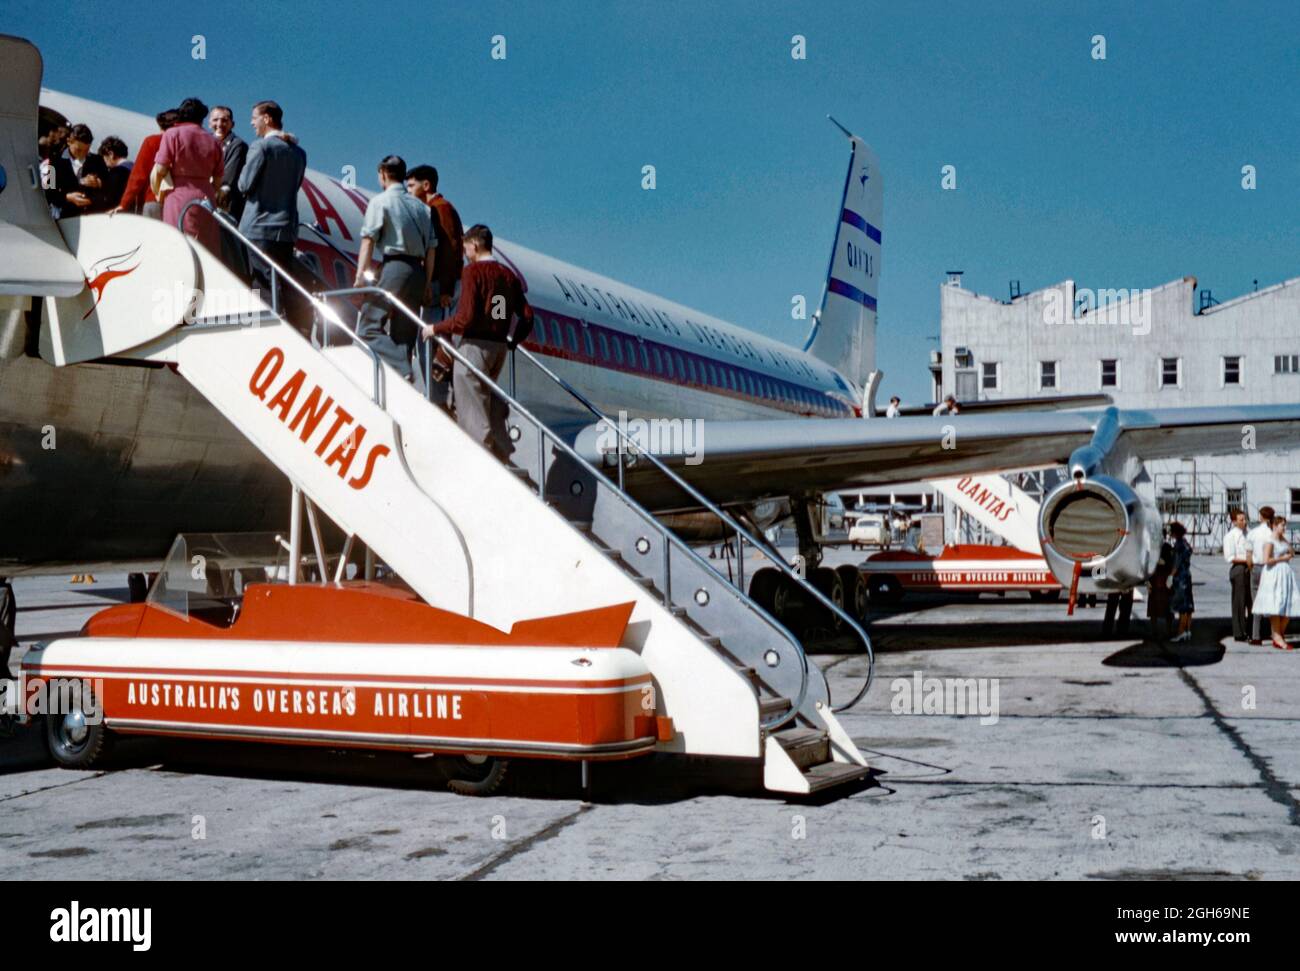 Les passagers qui embarquent dans un Boeing 707 de Qantas en 1960 au moyen d'un véhicule mobile à monter dans les escaliers. Qantas Airways Limited est le transporteur aérien de l'Australie et sa plus grande compagnie aérienne. Il s'agit de la troisième compagnie aérienne la plus ancienne au monde encore en exploitation, fondée en novembre 1920. Le logo kangourou de Qantas se trouve sur l’escalier et la queue de l’avion. Notez les courbes Art déco épurées du véhicule d'embarquement. Cette image provient d'un ancien transparent couleur Kodak amateur, une photographie vintage des années 1960. Banque D'Images